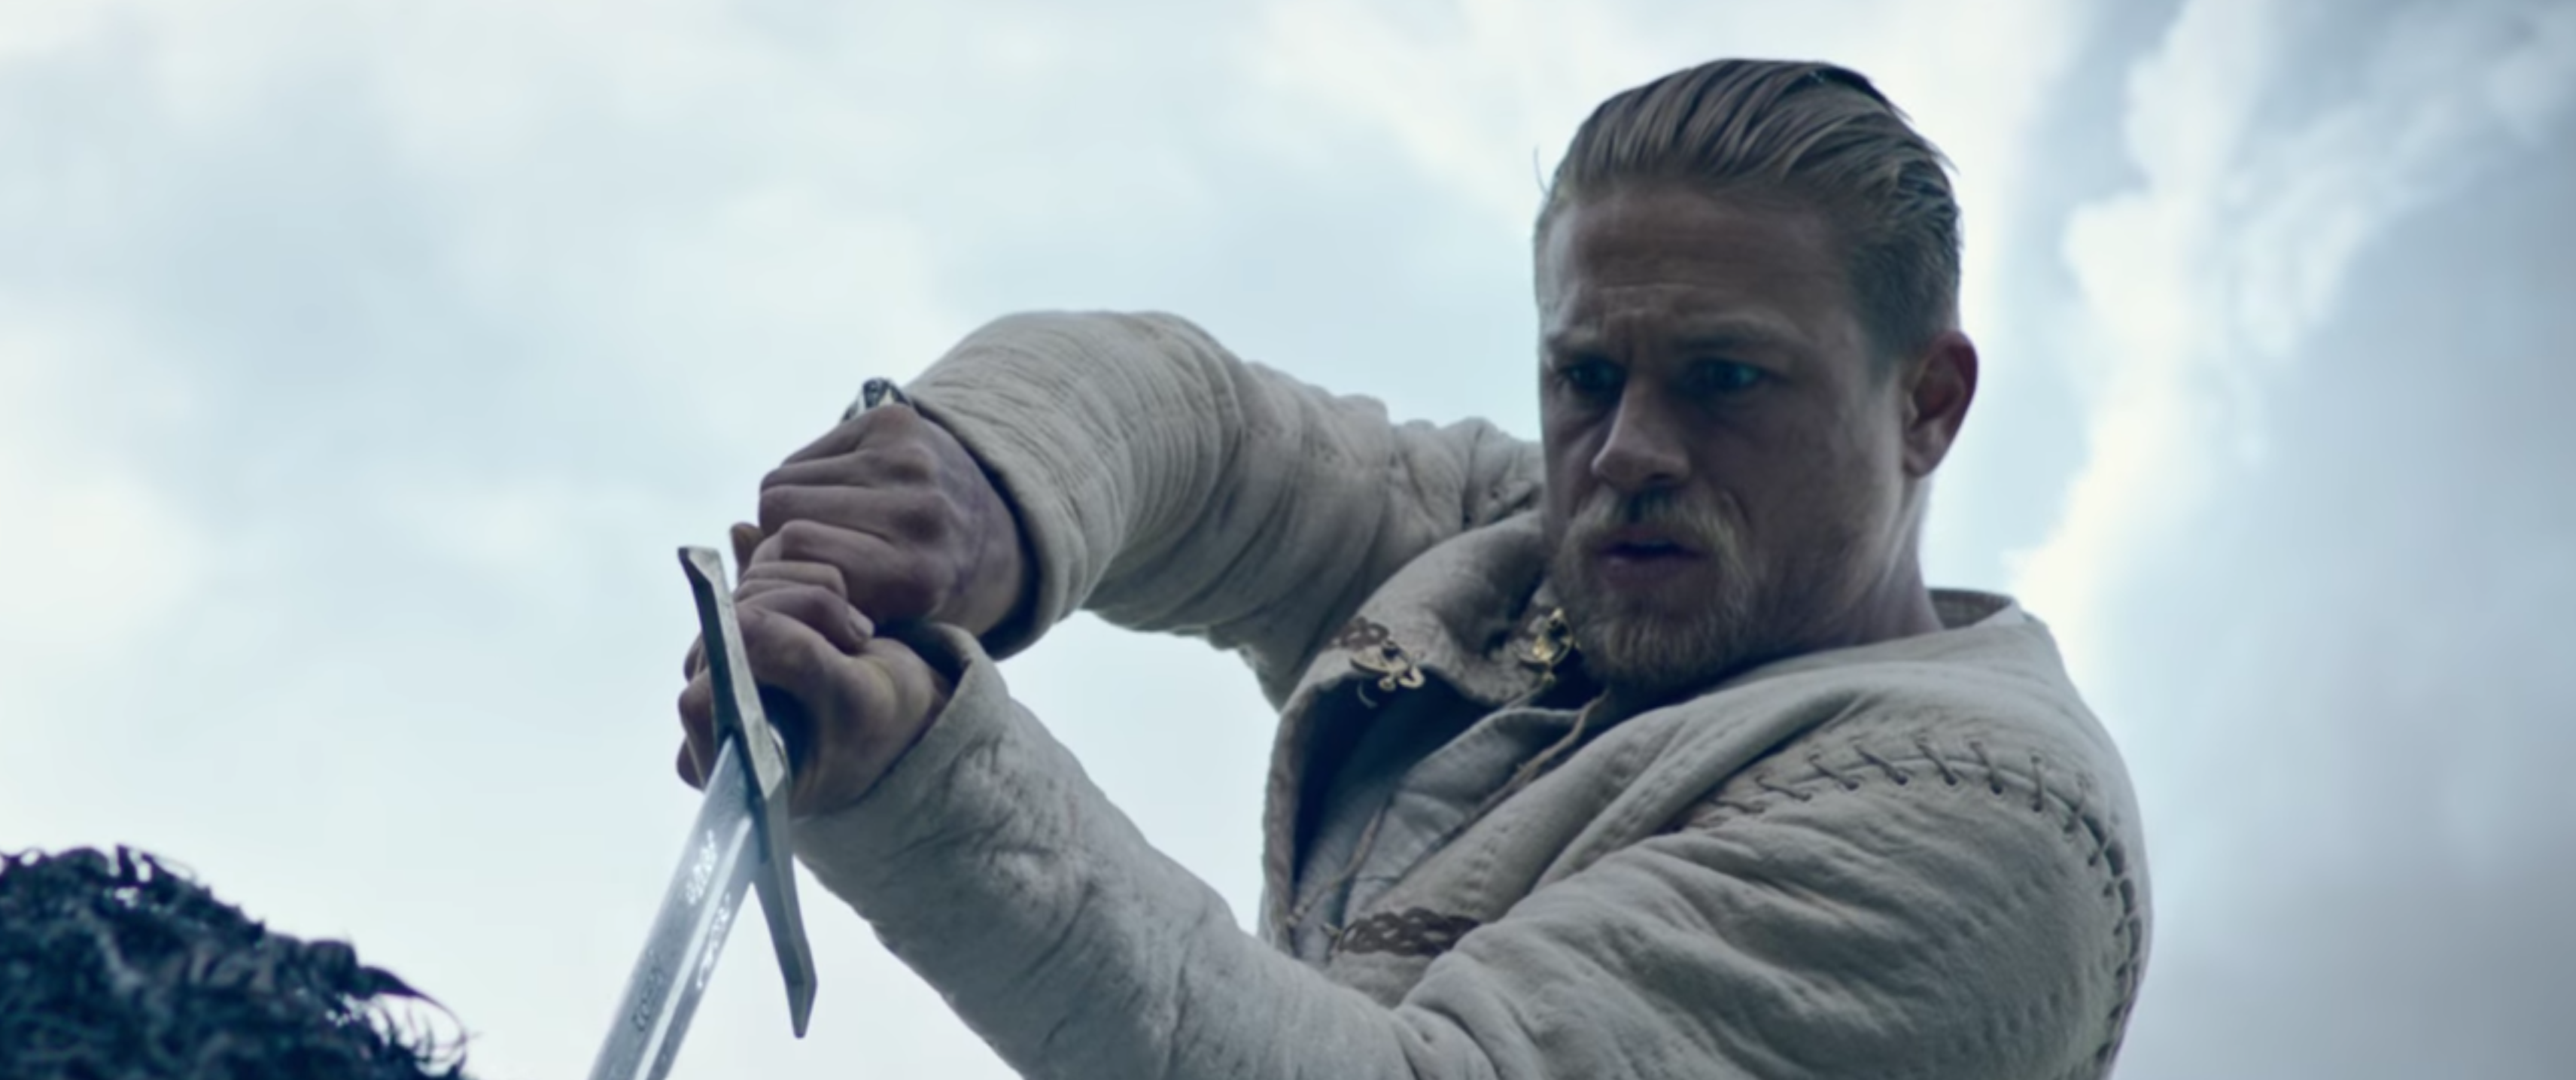 Watch Online Hd King Arthur: Legend Of The Sword Trailer